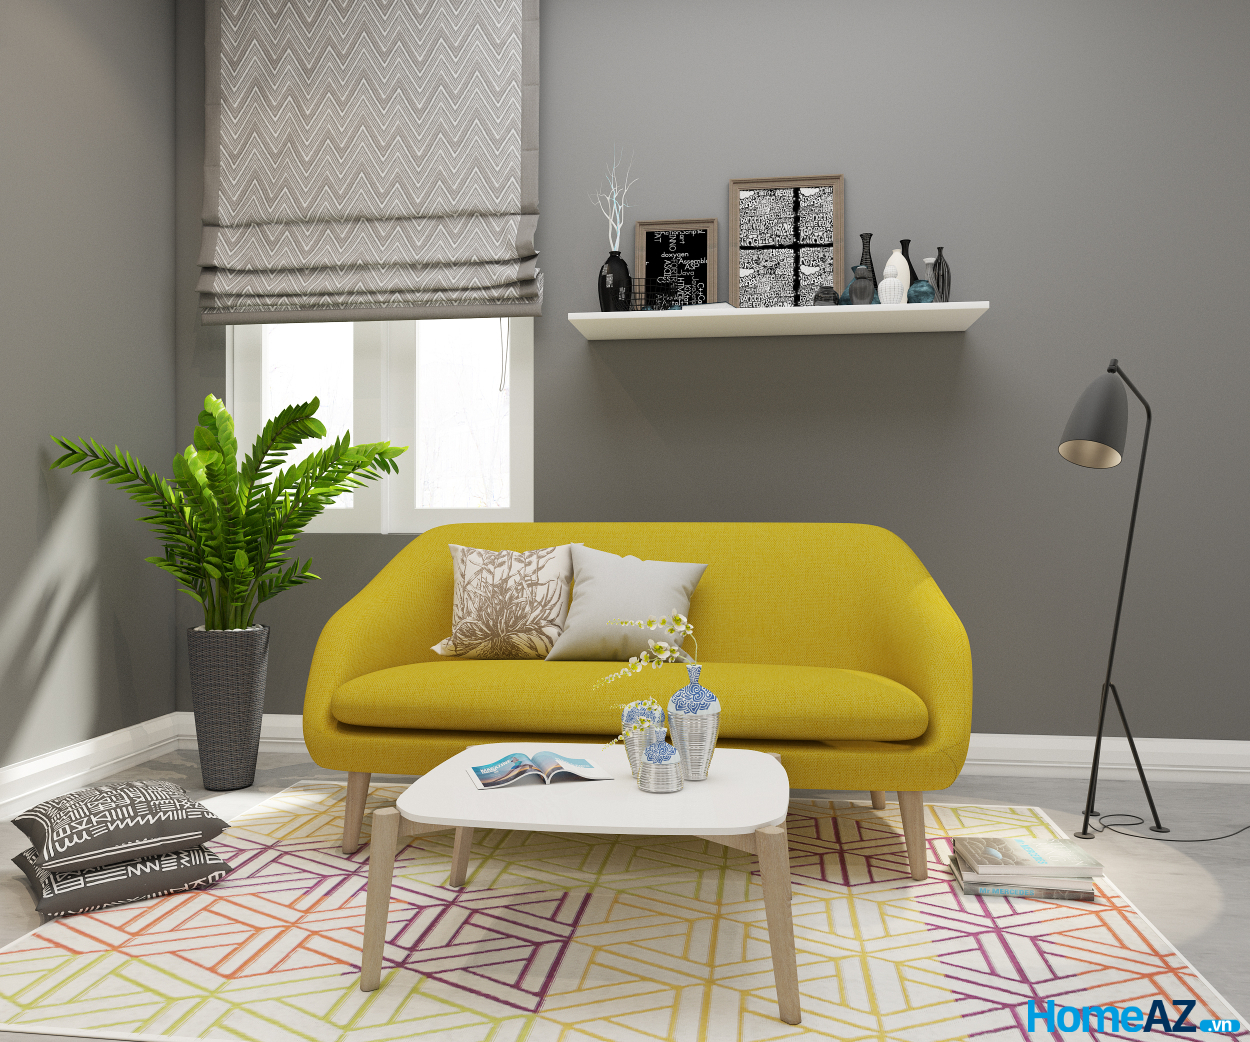 Ghế sofa băng Orinoco là một thiết kế khá thân thiện với người nhìn, với màu vàng trẻ trung tươi tắn.